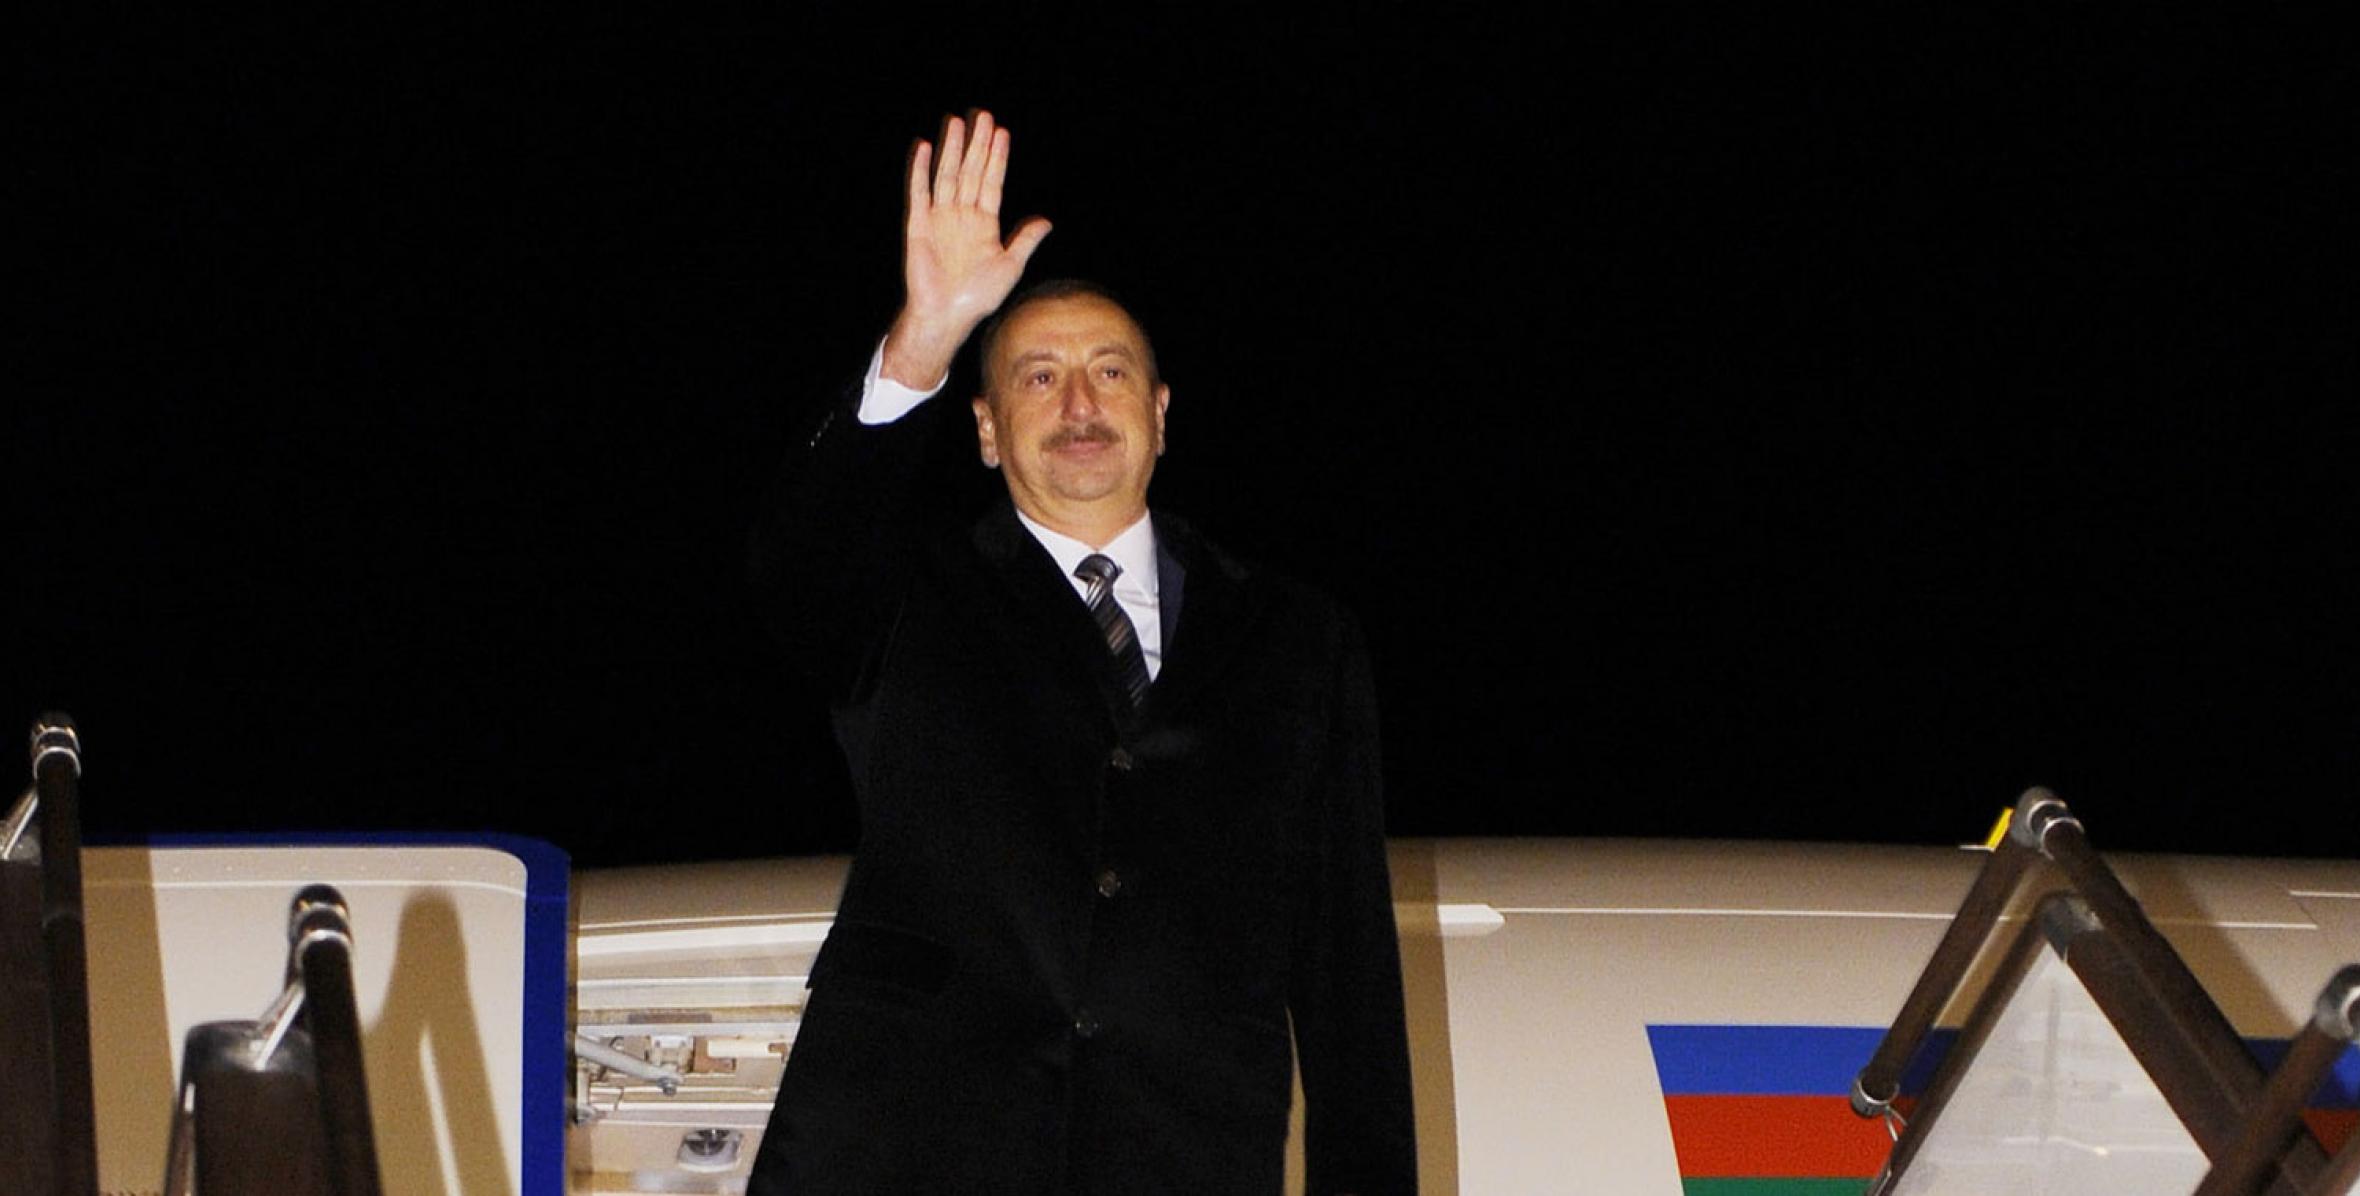 Ильхам Алиев отбыл с официальным визитом в Латвию